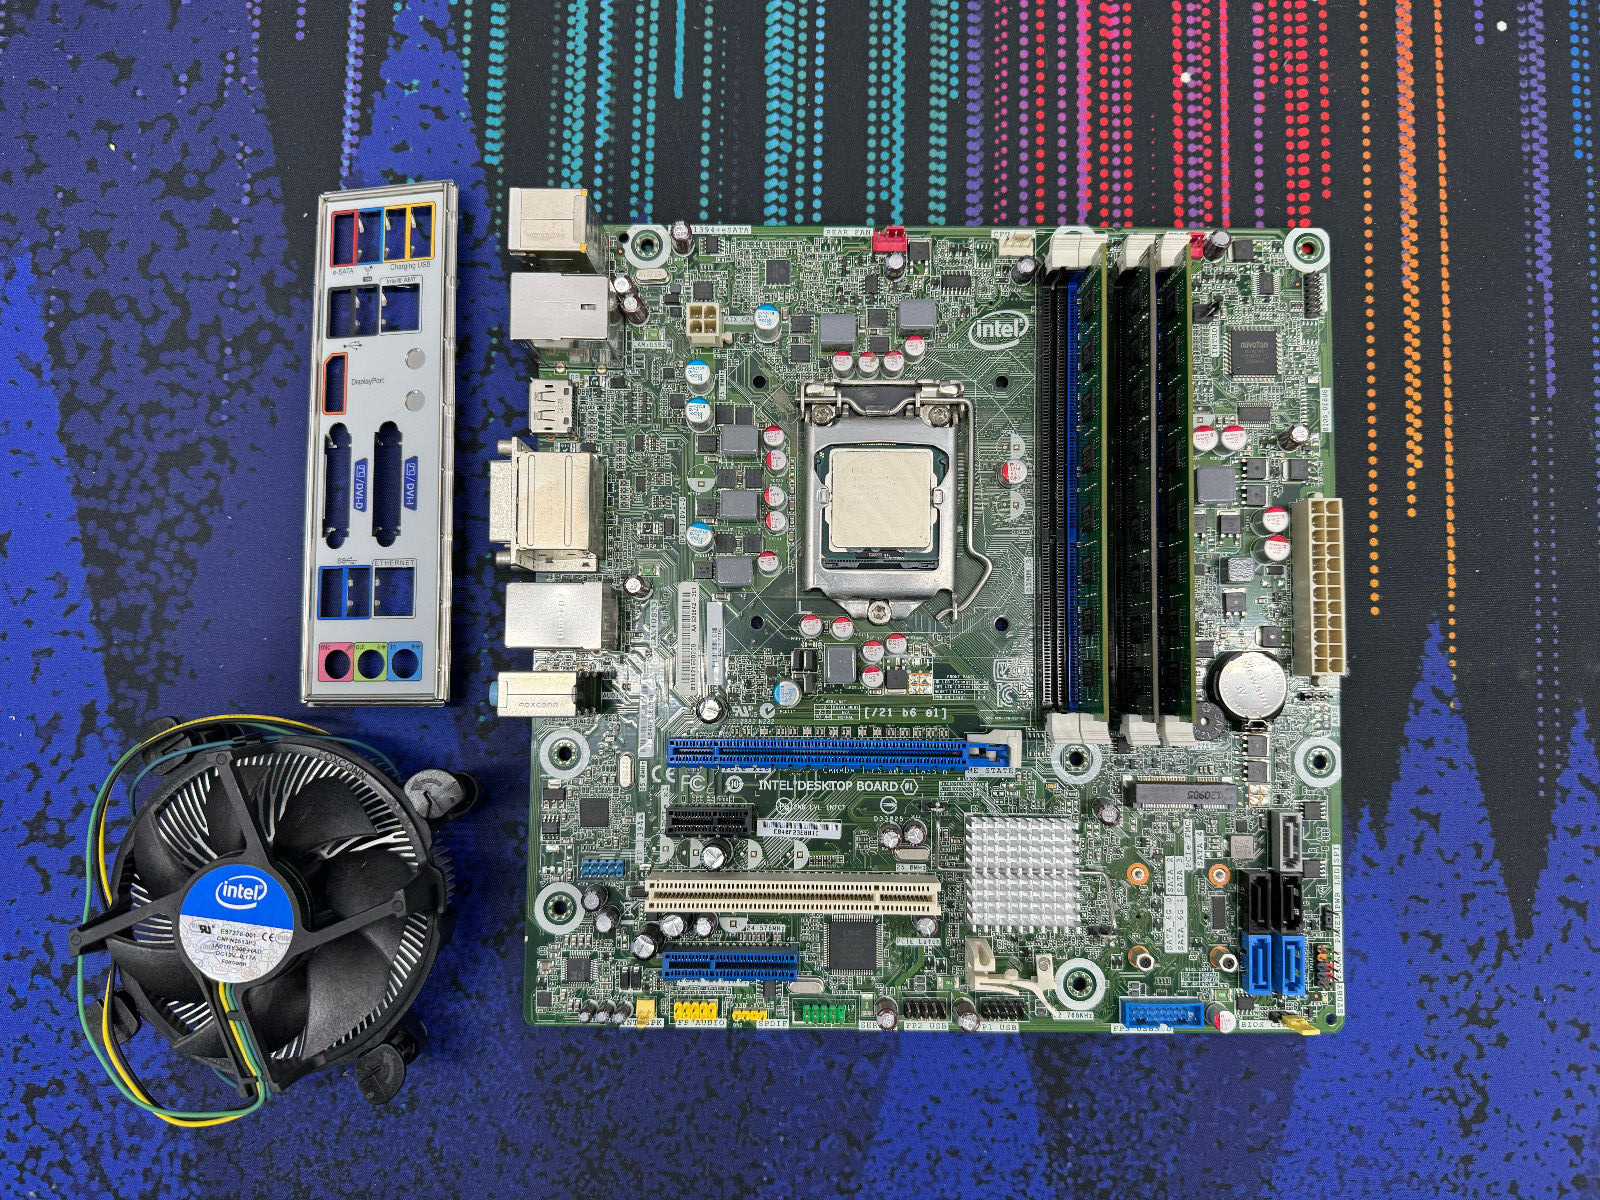 Intel DQ77MK Socket LGA1155 Motherboard w/ Core i5-3550 + 8GB RAM & Heatsink